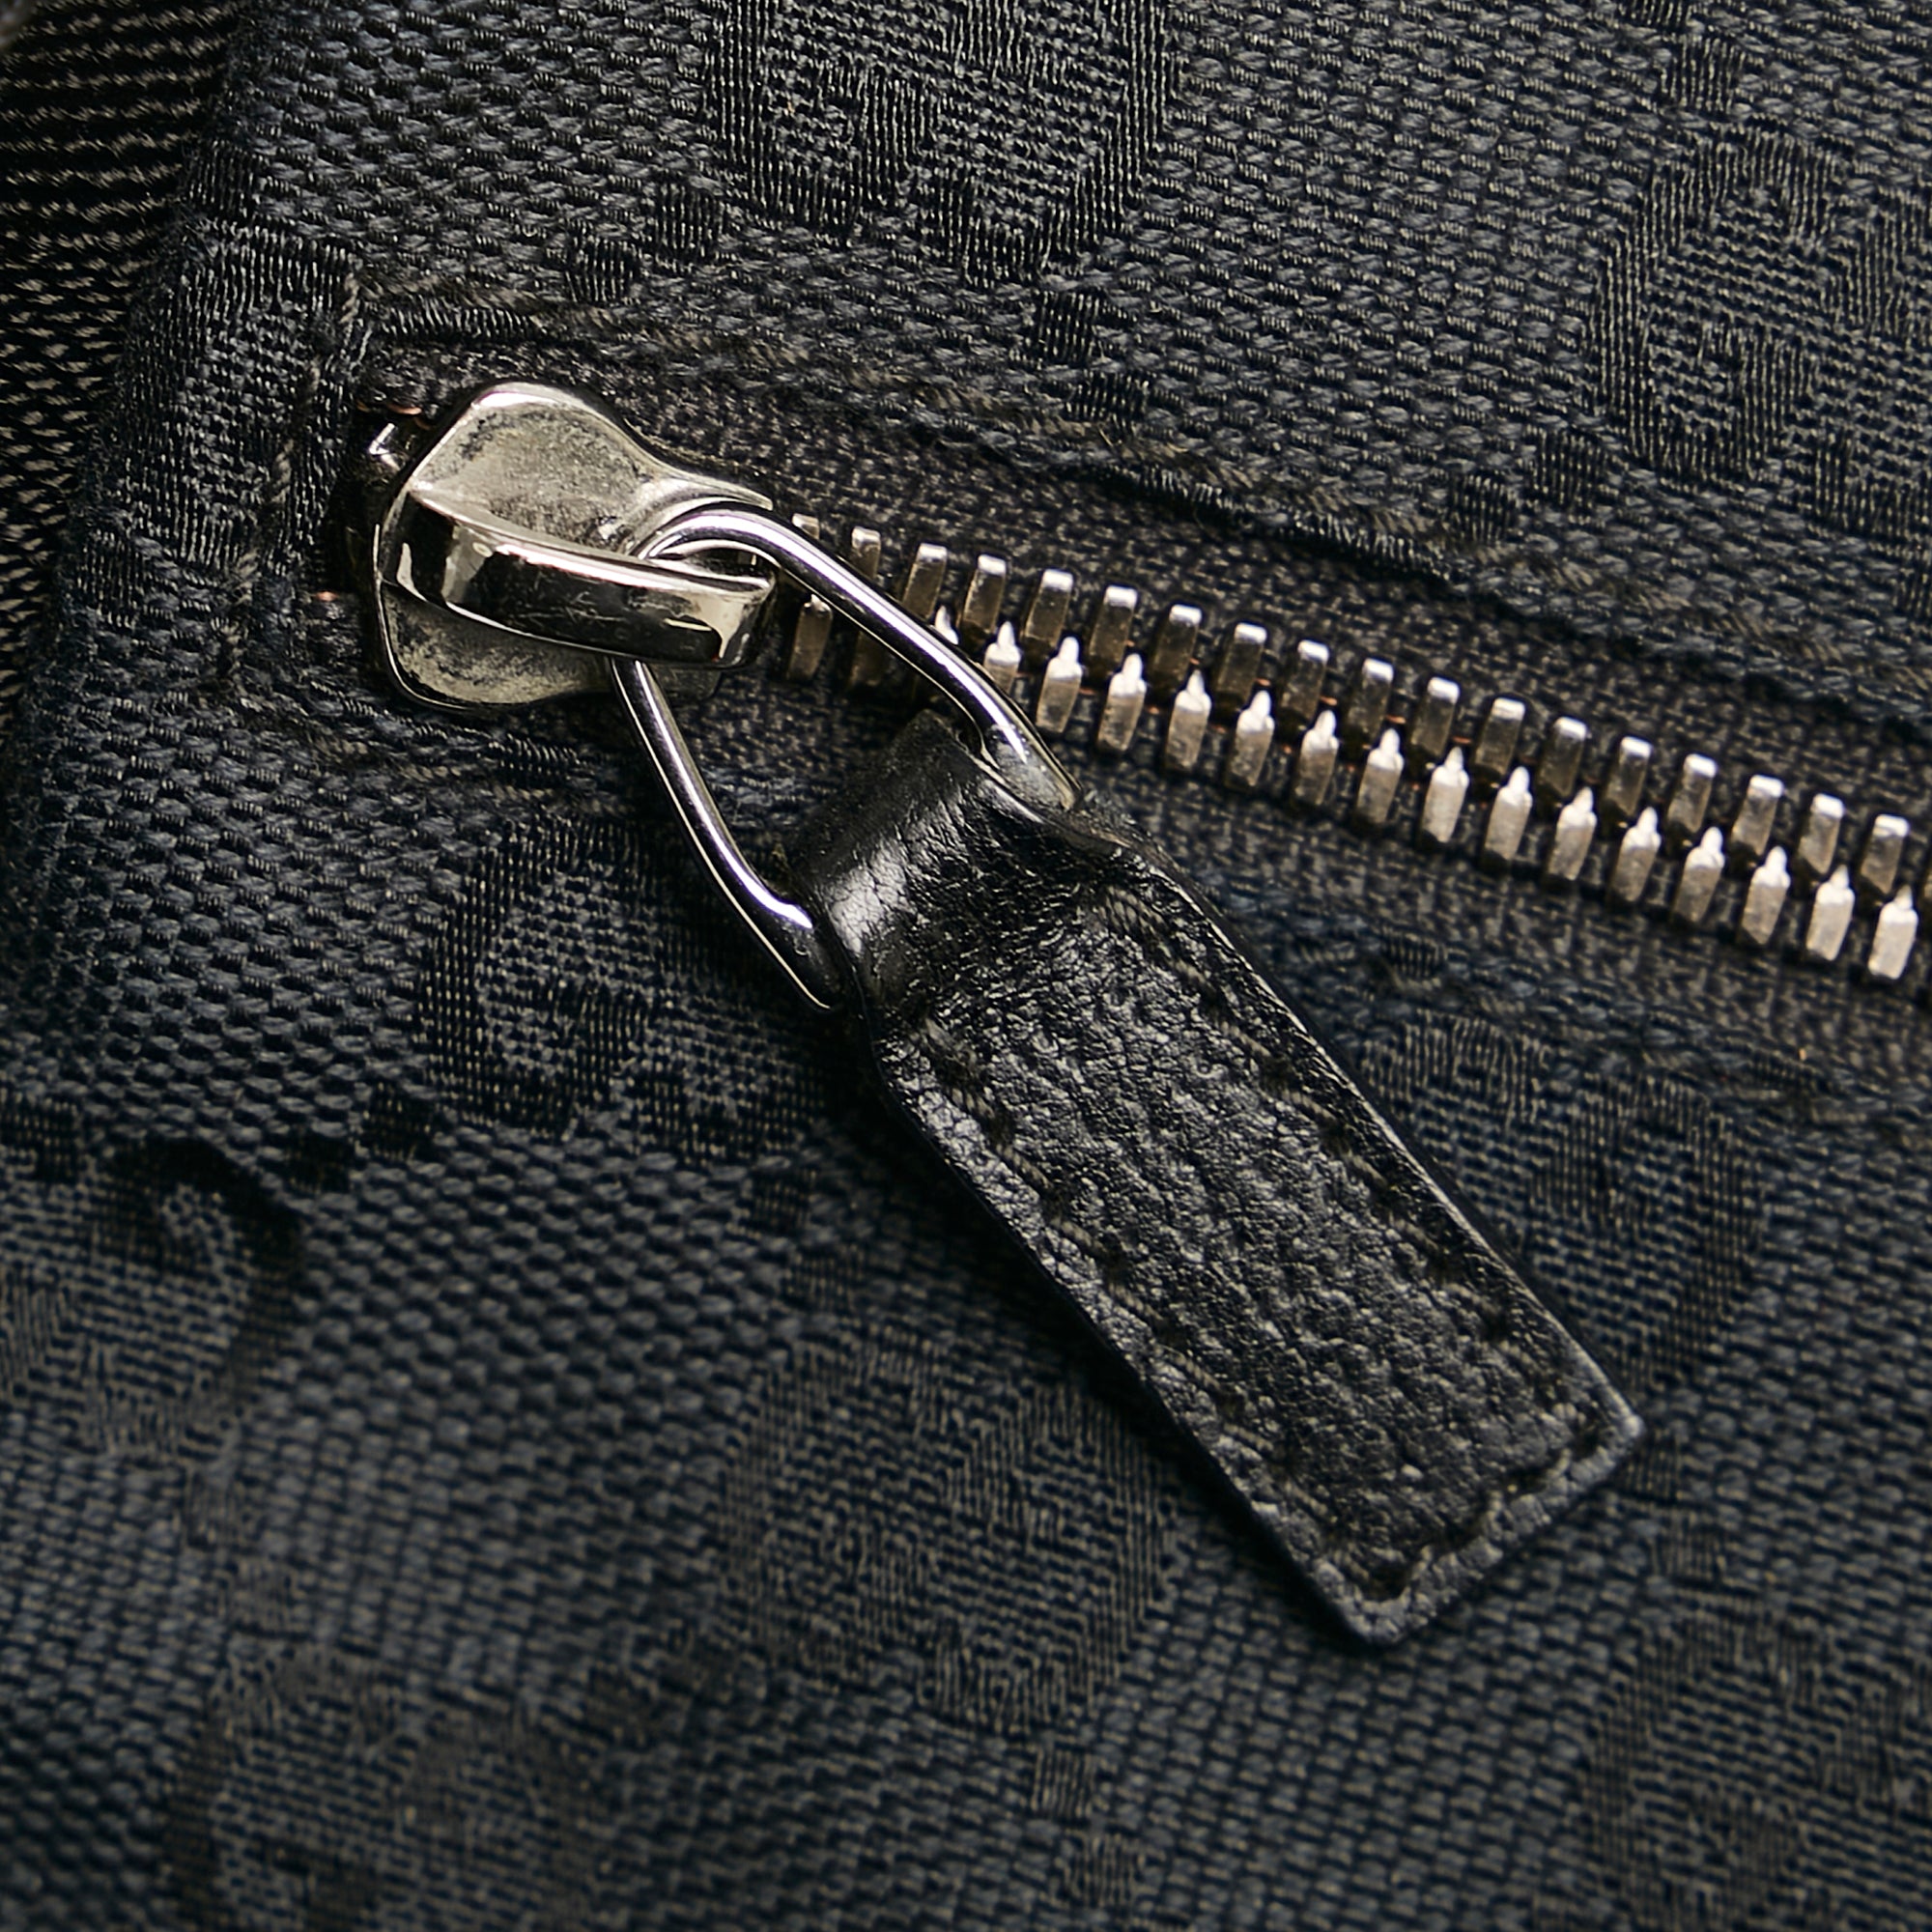 Gucci Brown Original GG Coated Canvas Flap Belt Bag Small QFA1AY0L0H006